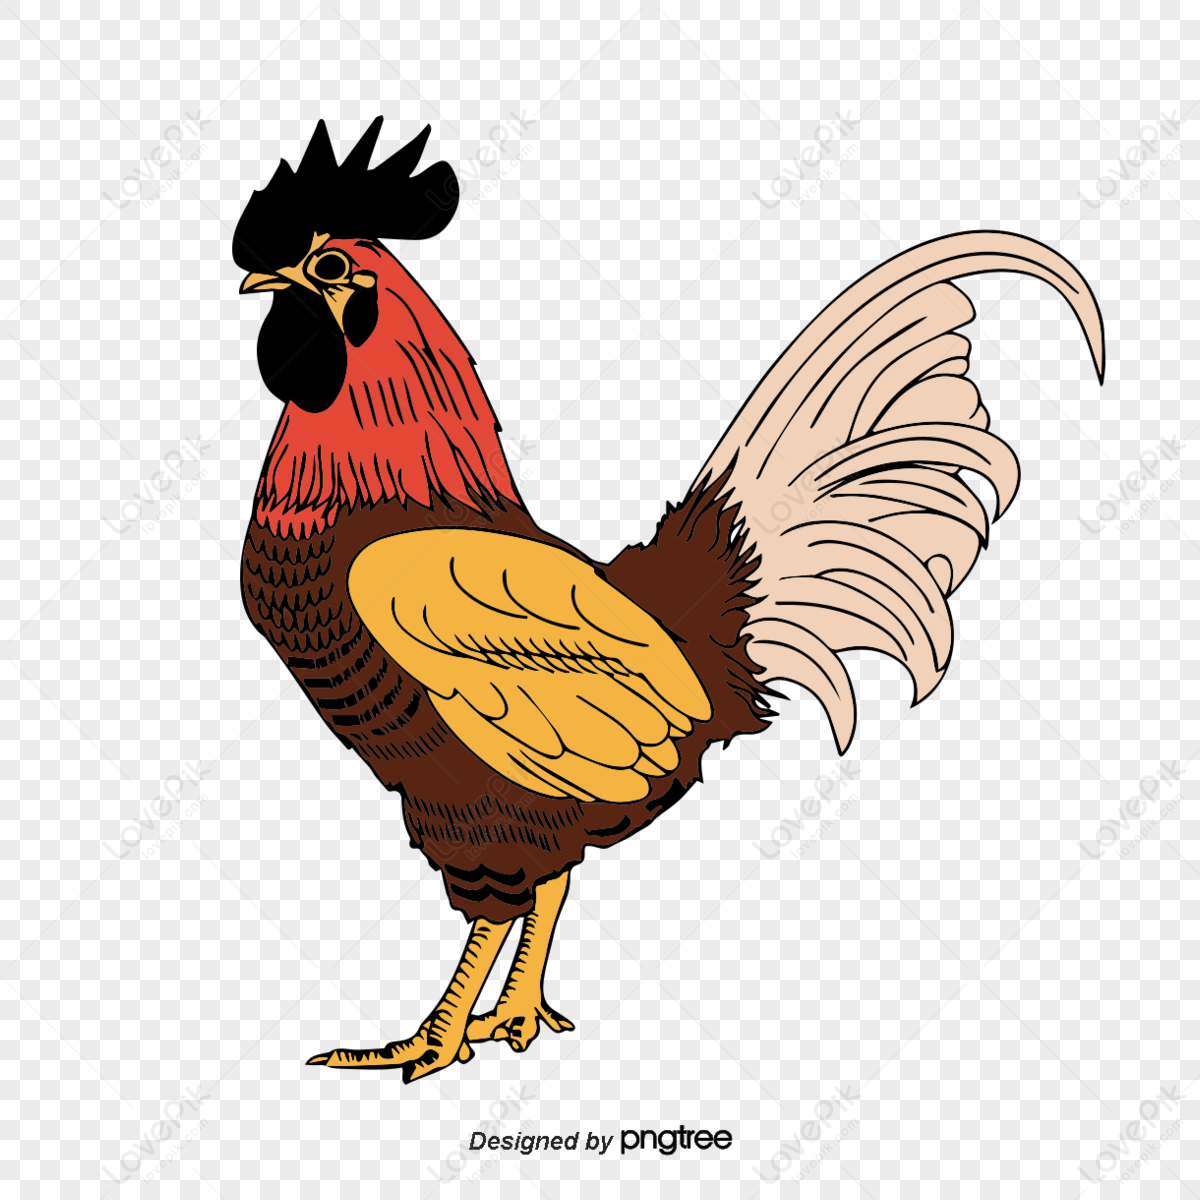 Thịt gà phim Hoạt hình Vẽ - con gà trống png tải về - Miễn phí trong suốt Gà  png Tải về.